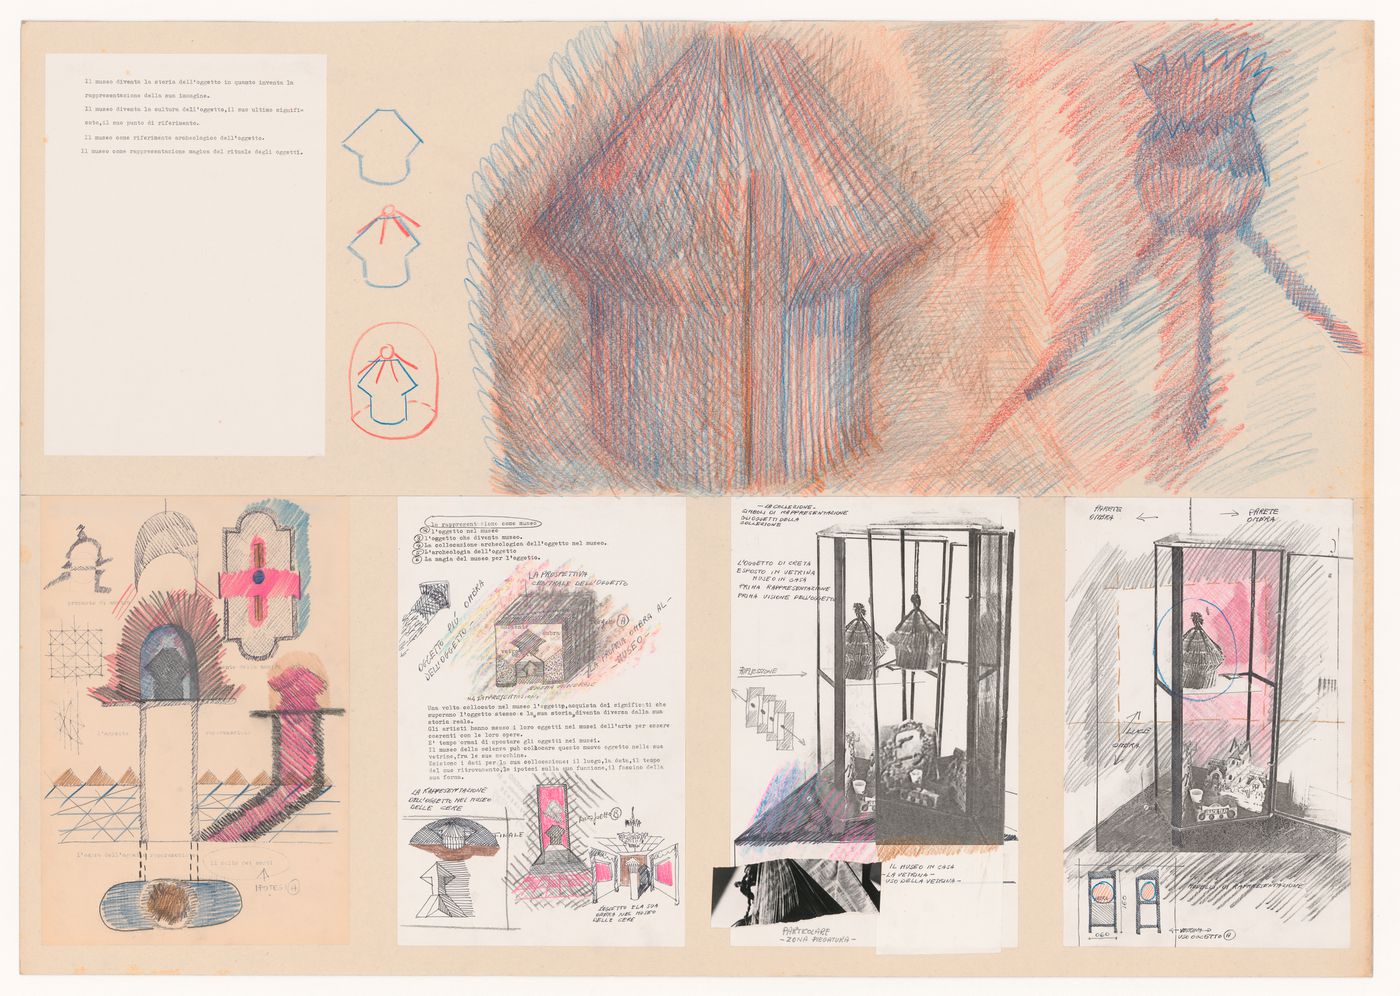 Presentation drawings for Architecttura di carta [Paper architecture]